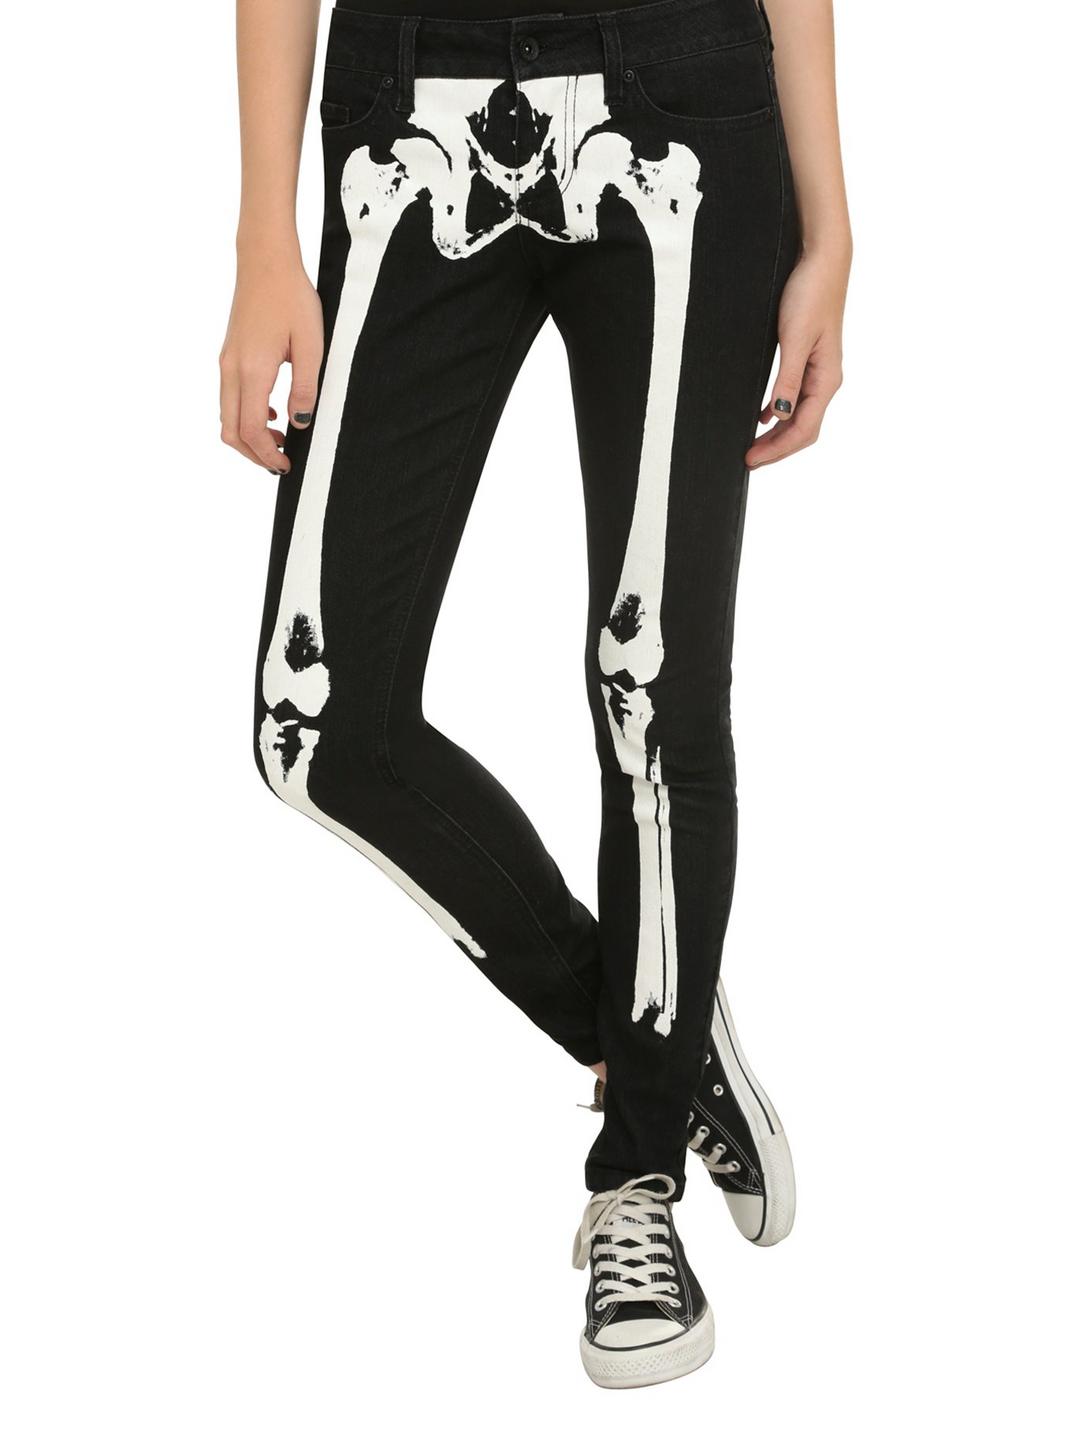 LOVEsick Black & White Skeleton Skinny Jeans, BLACK, hi-res